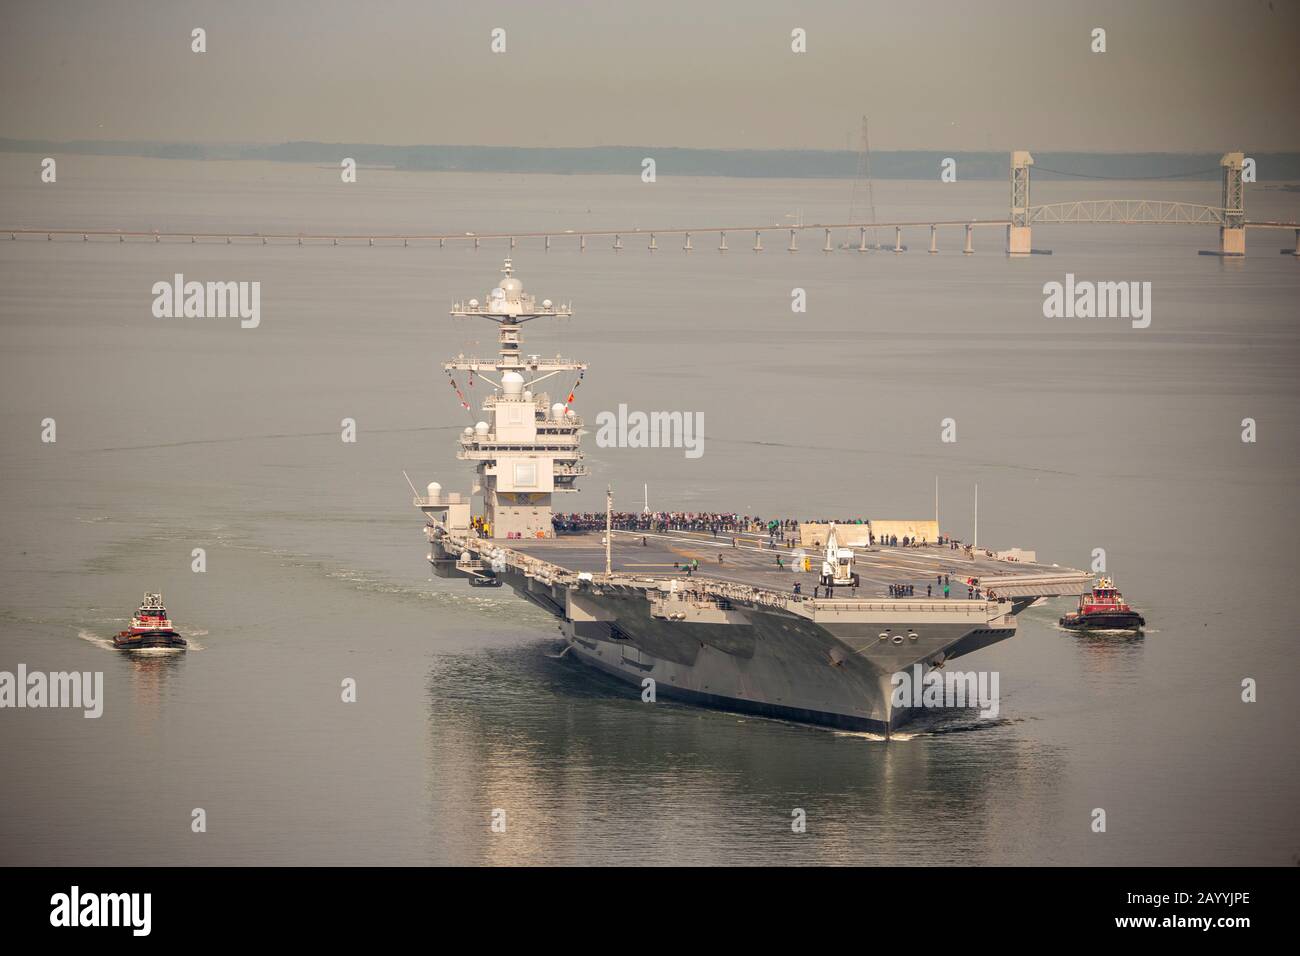 La portaerei nucleare USS Gerald R. Ford della classe Nimitz della marina statunitense inizia la sperimentazione in mare dopo 15 mesi di reinstallazione e shakedown 25 ottobre 2019 a James River, Virginia. Foto Stock